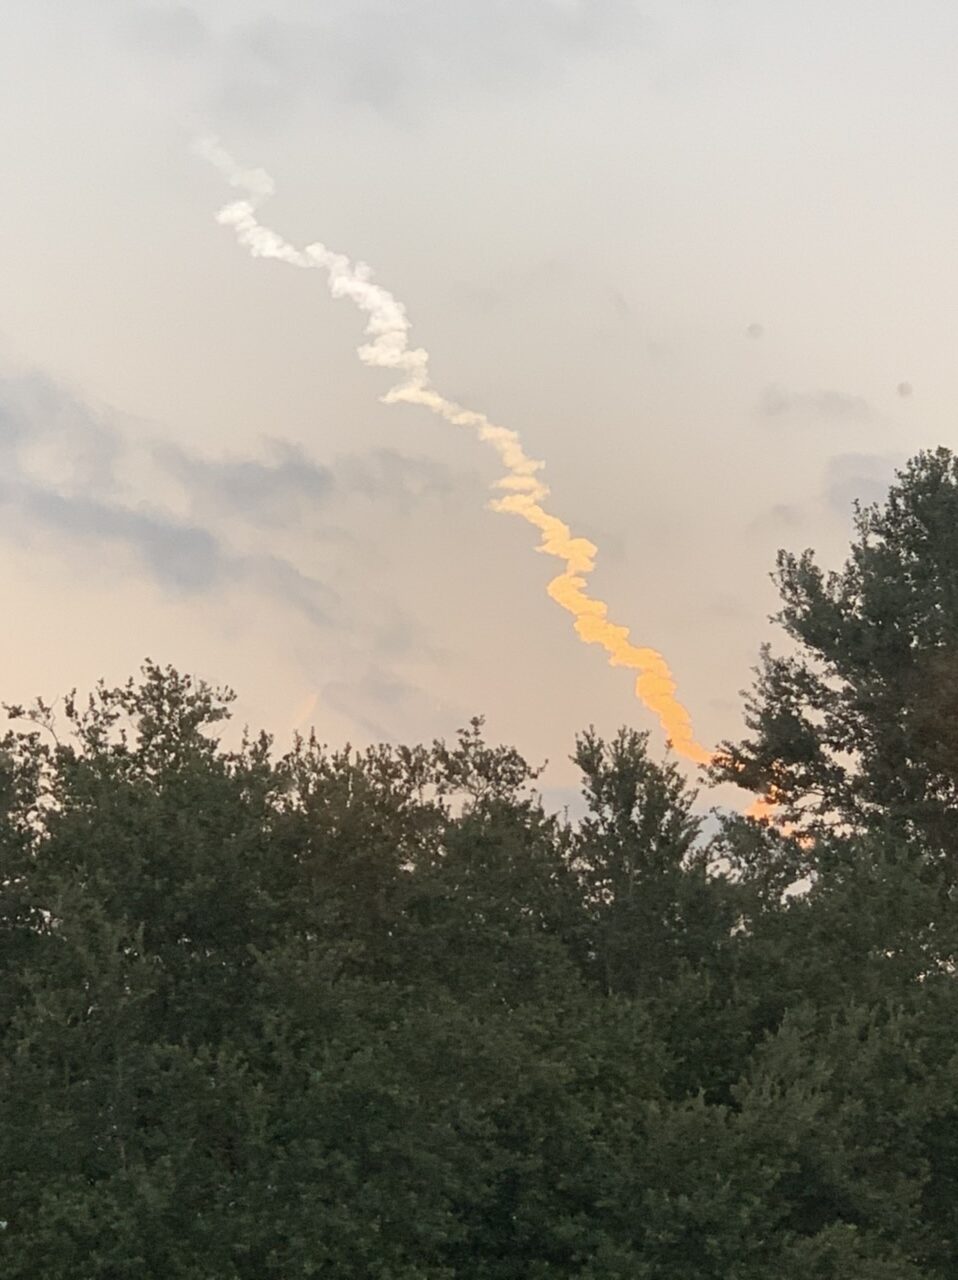 Rocket launch smoke trail in sky